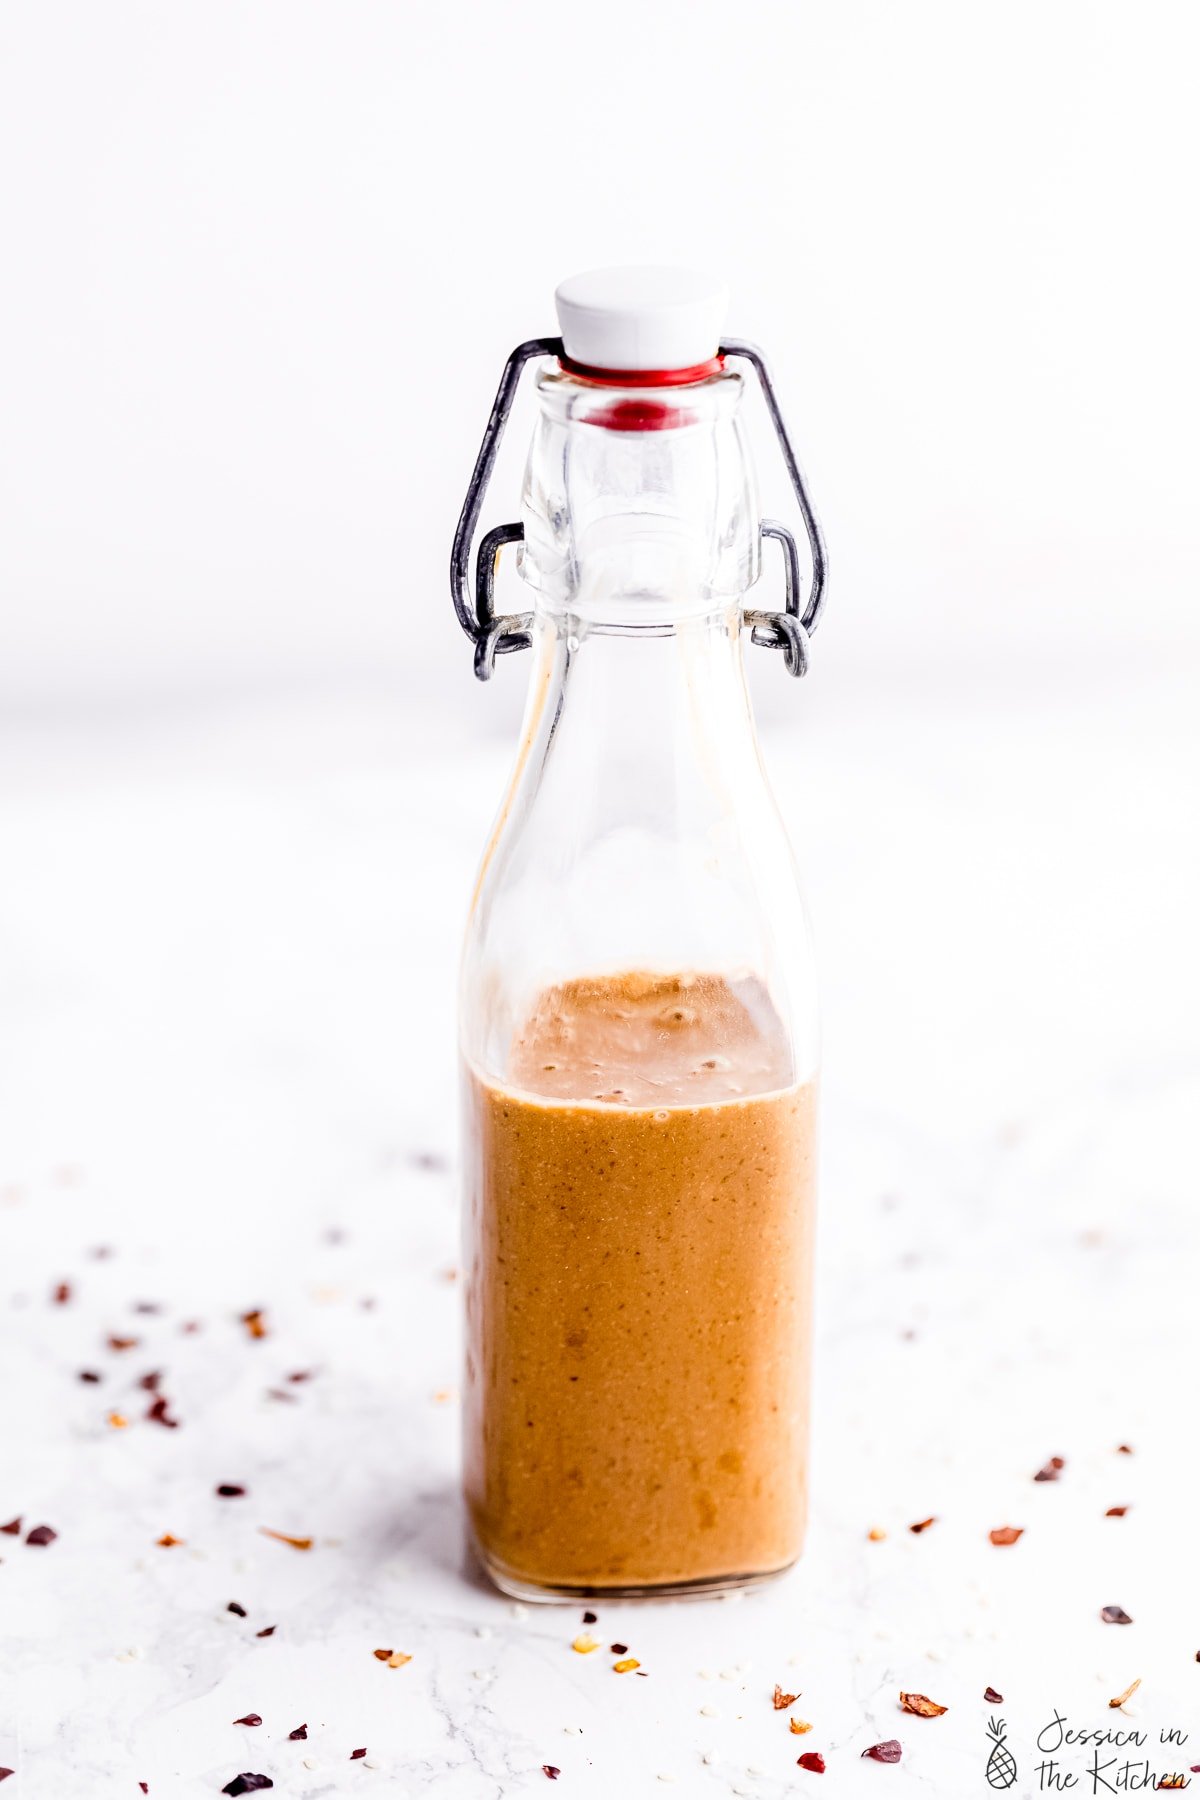 Thai peanut sauce in a sauce bottle.